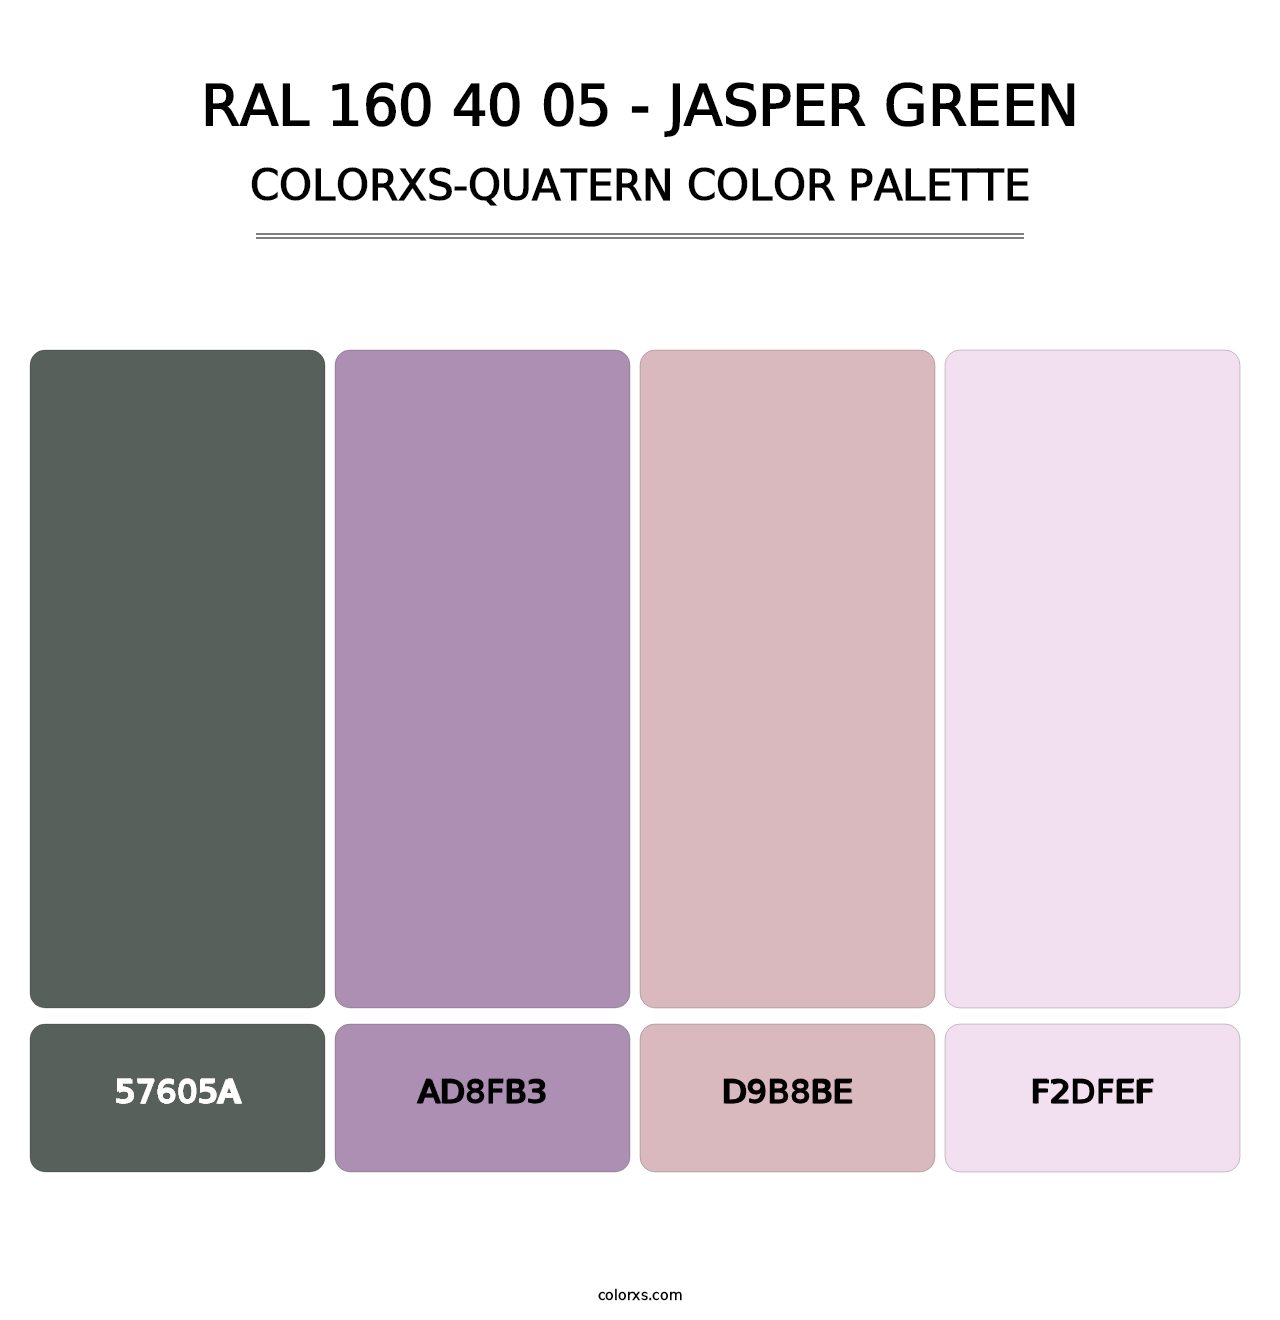 RAL 160 40 05 - Jasper Green - Colorxs Quatern Palette